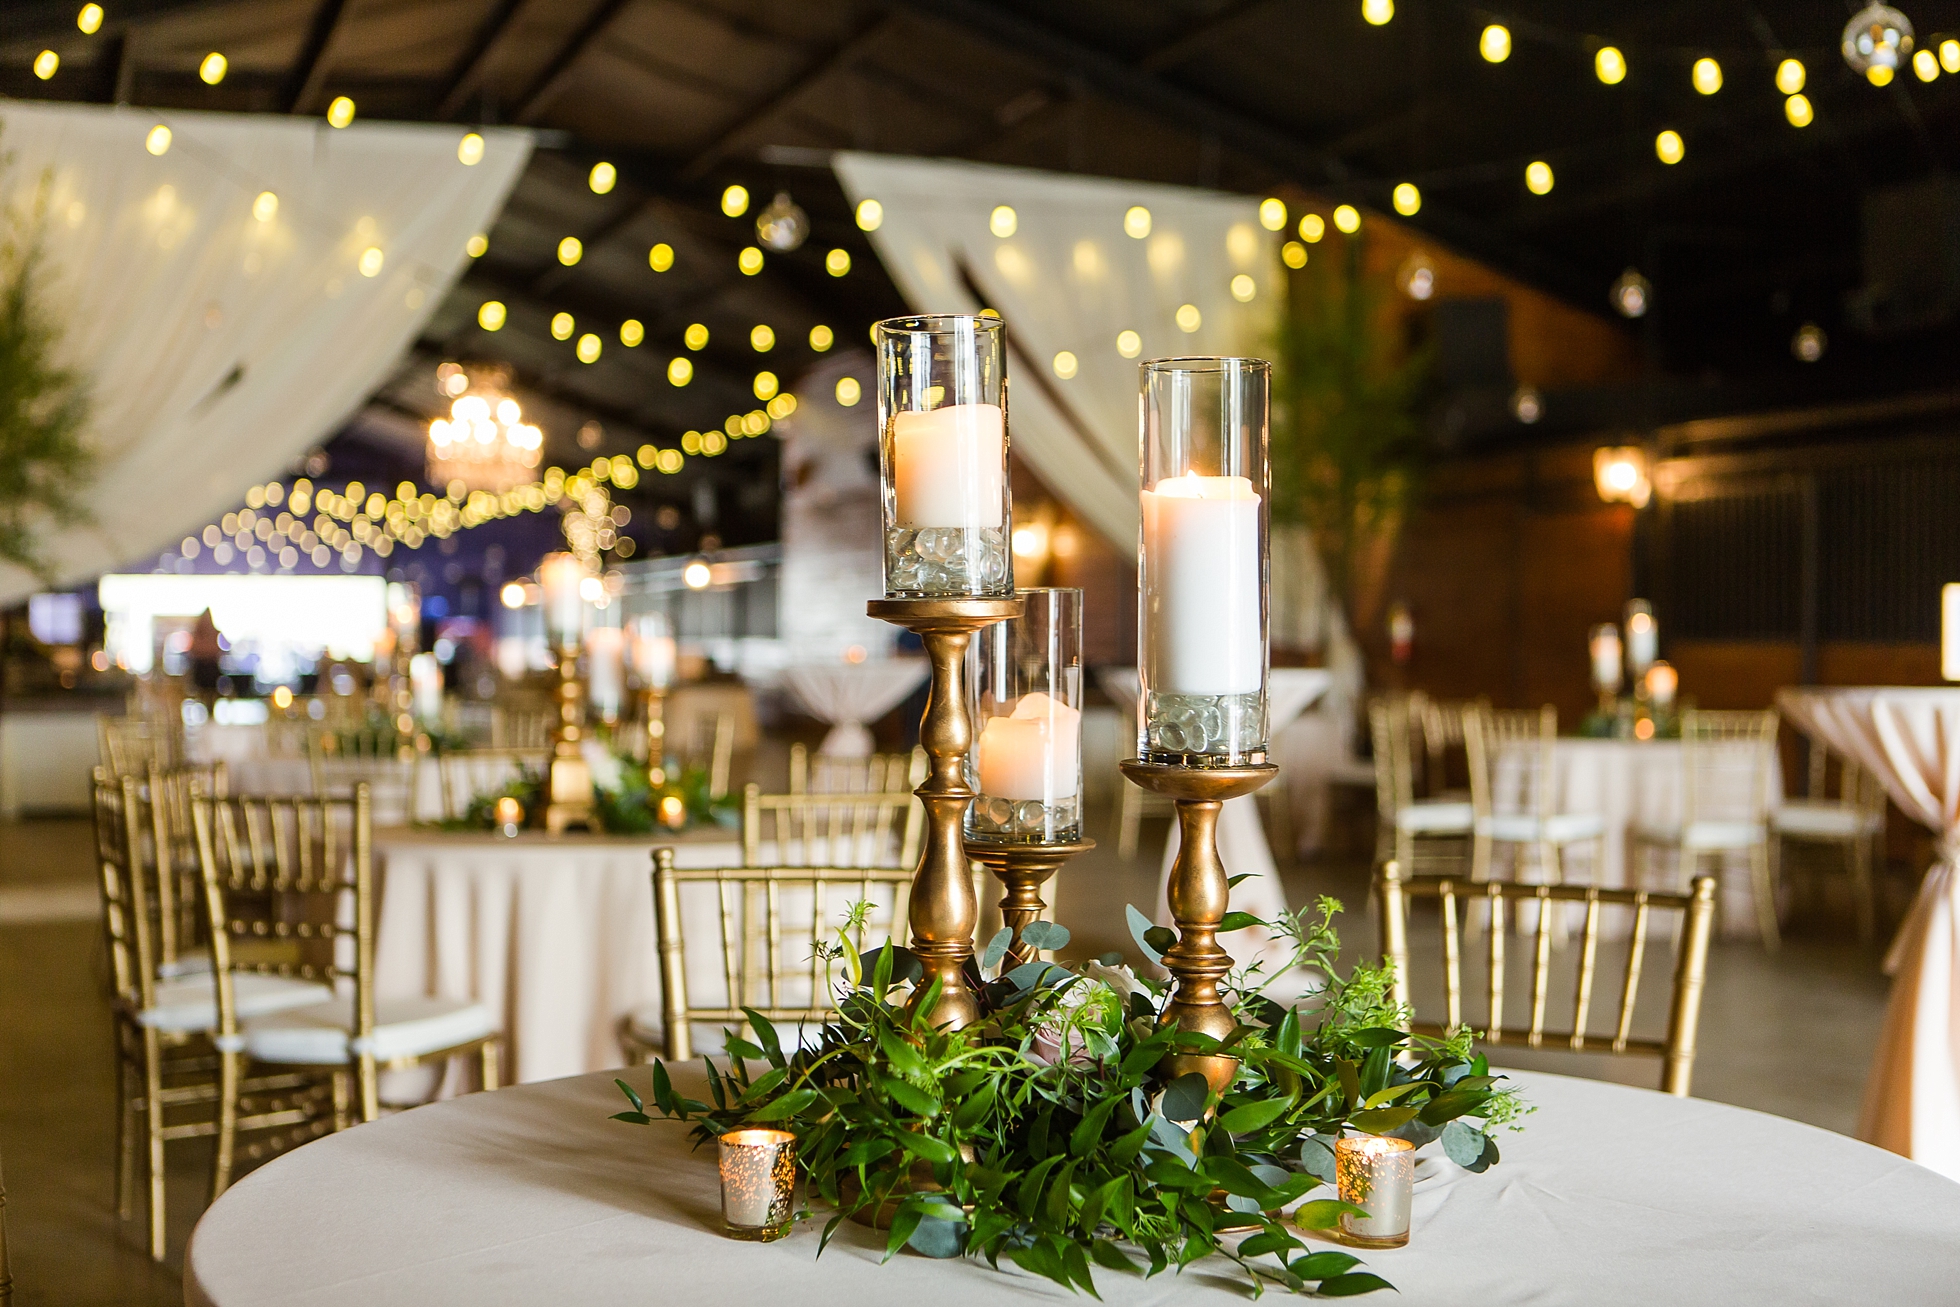 jl designs wedding decor reception farm